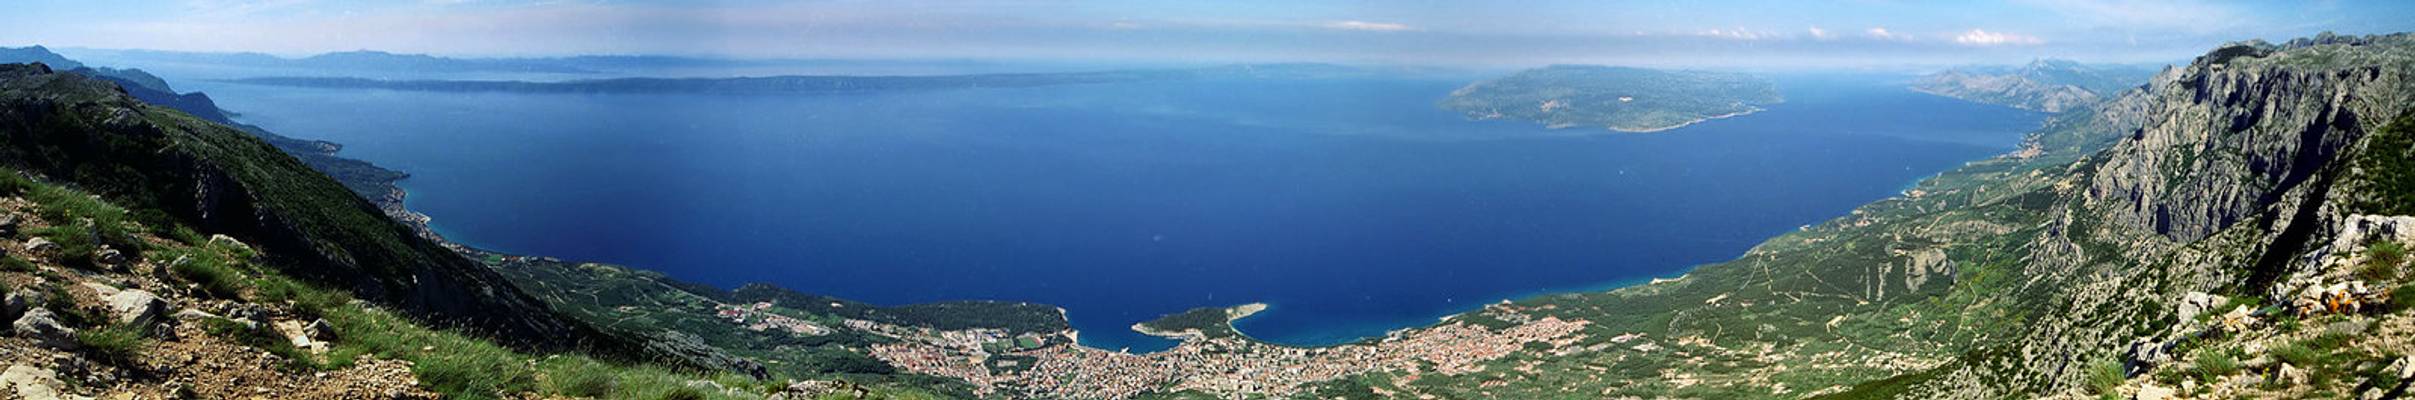 Makarska from above